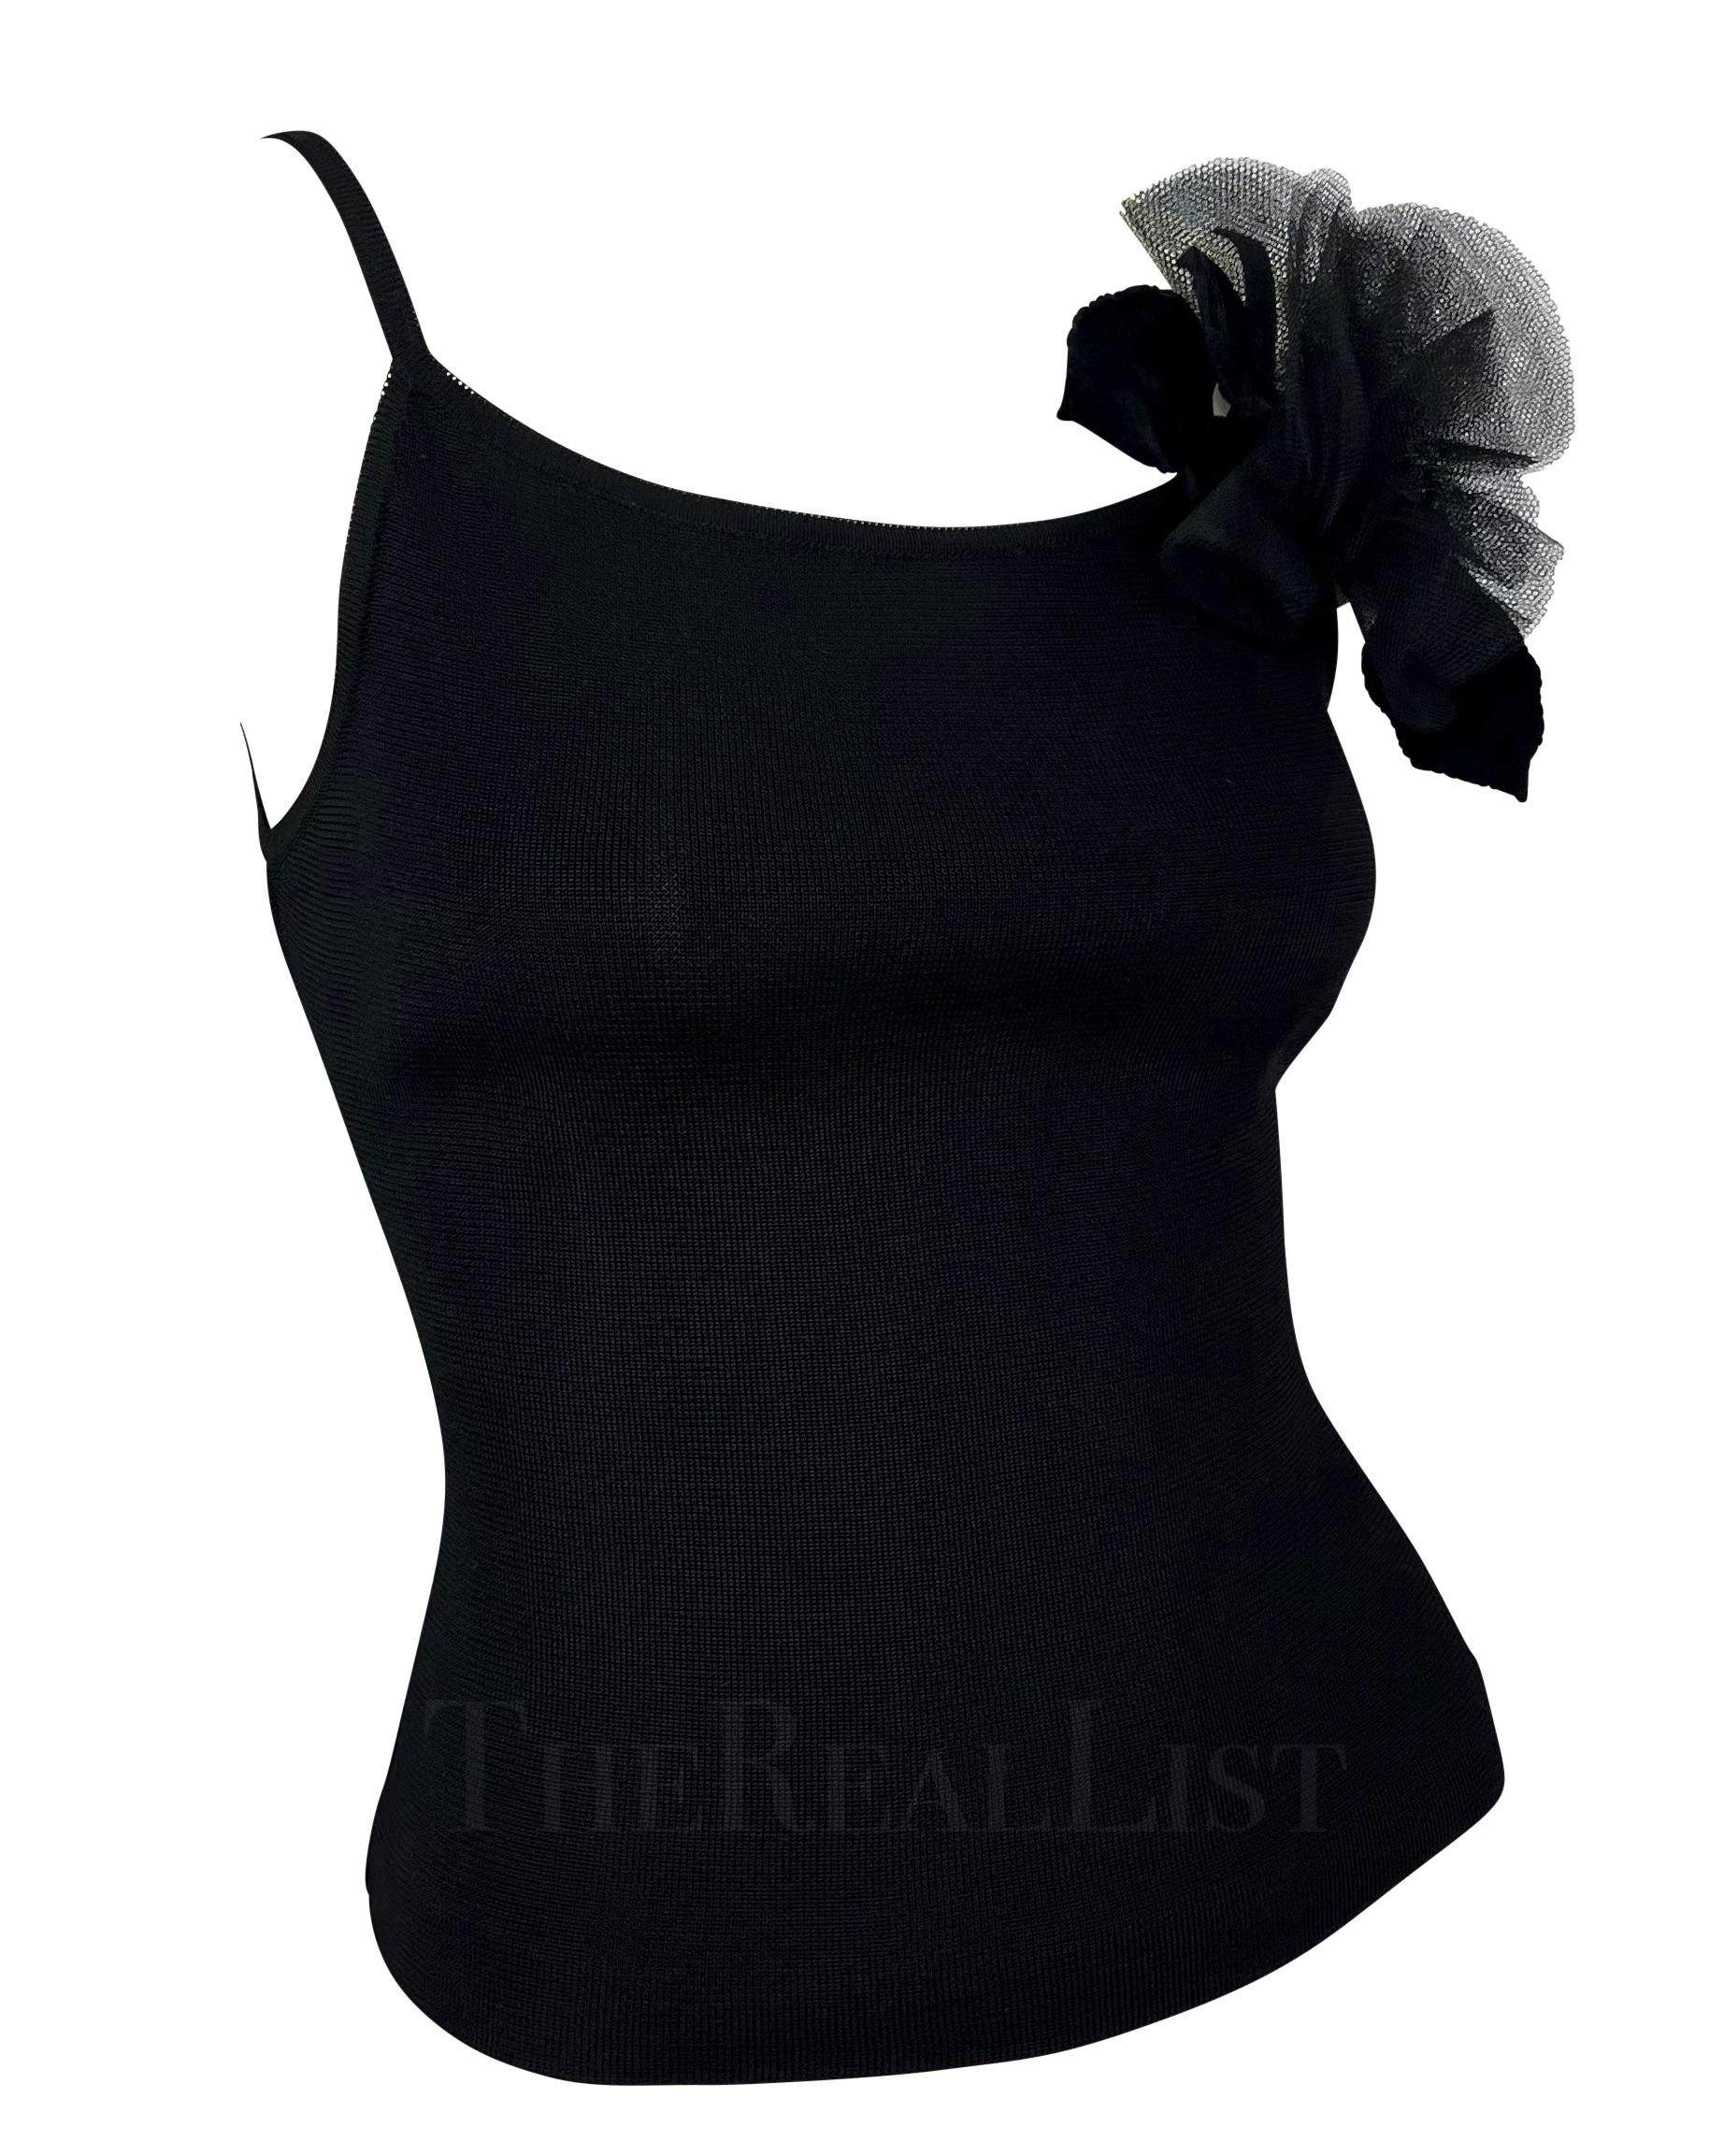 1990s Yves Saint Laurent Black Knit Floral Applique Tank Top For Sale 1